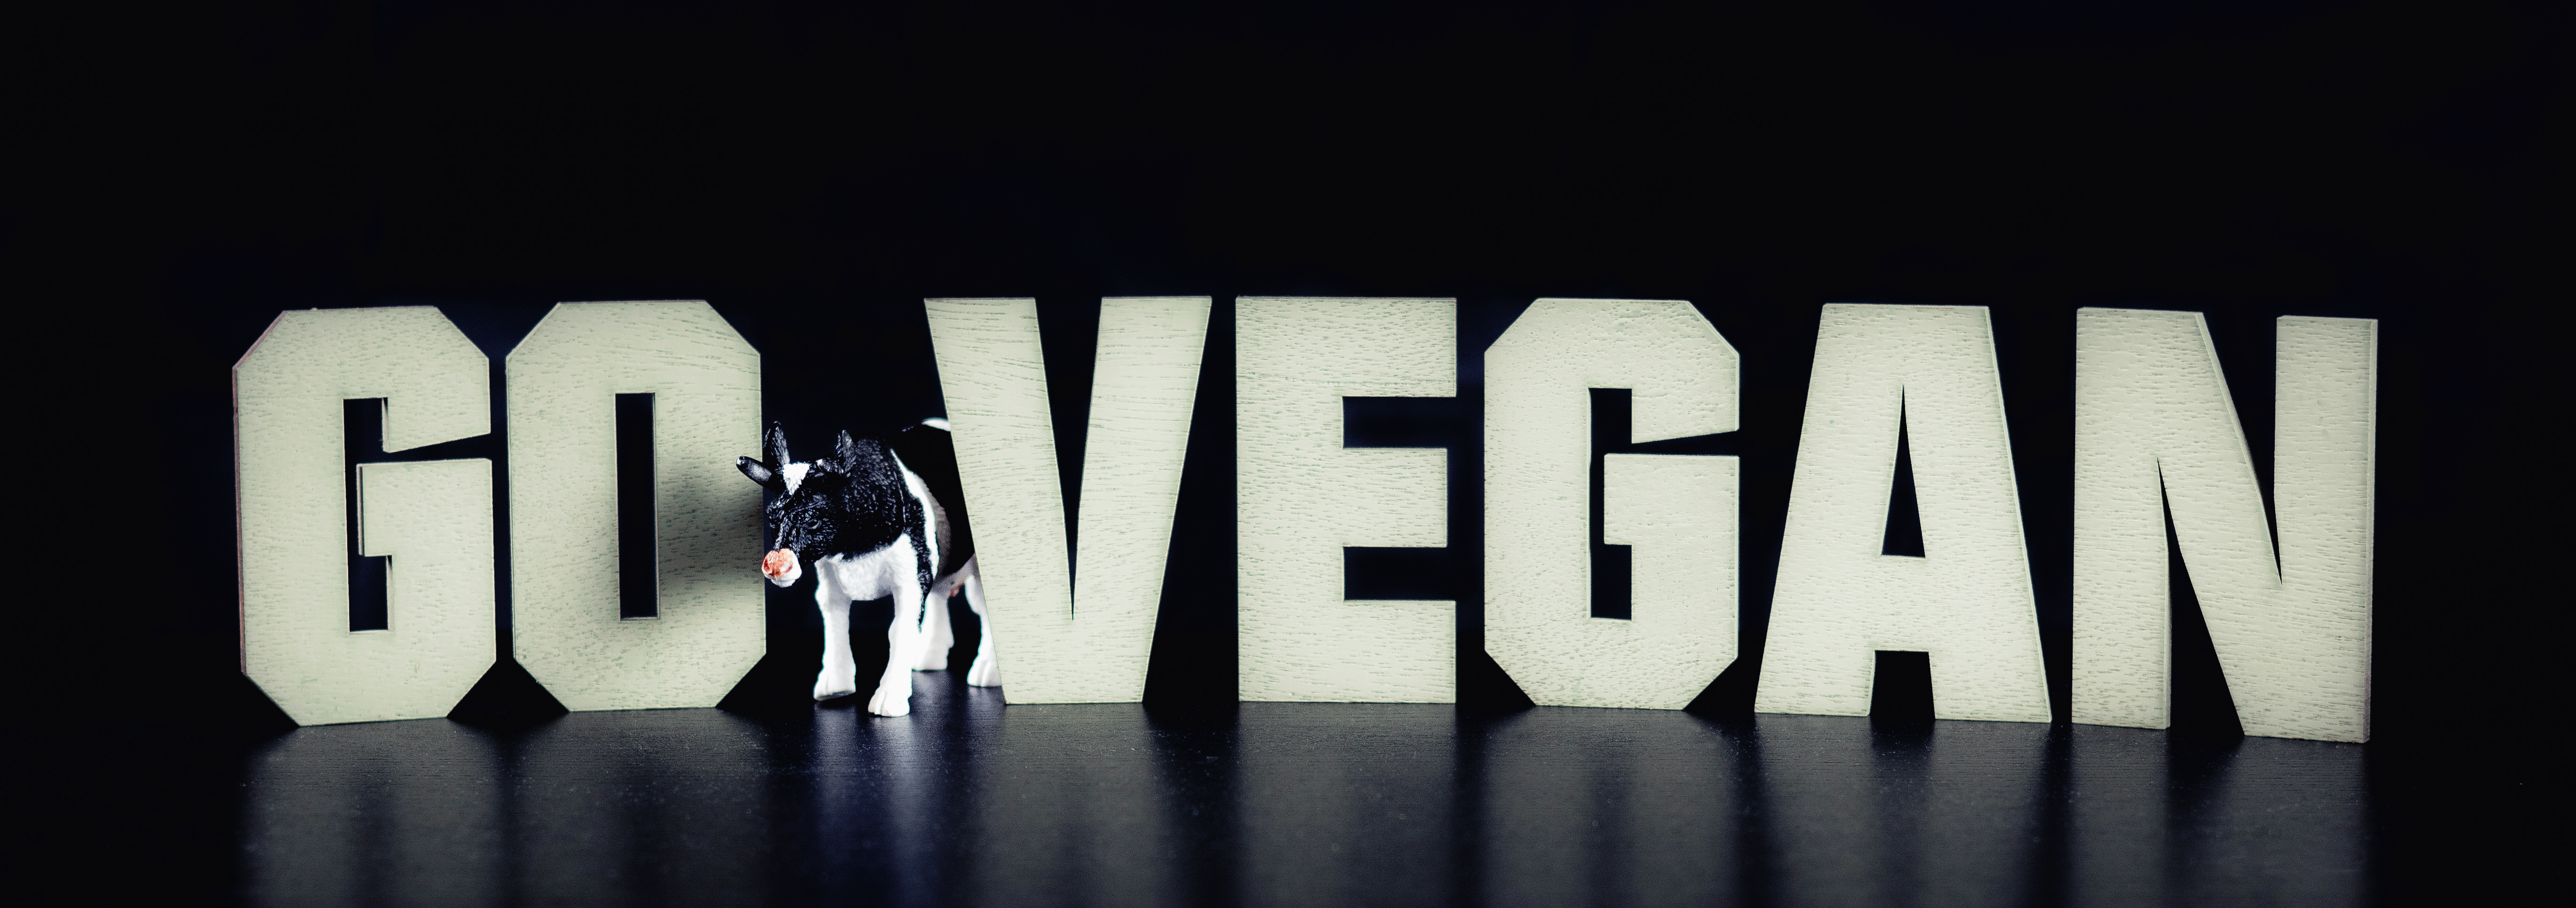 Documentales veganos más característicos